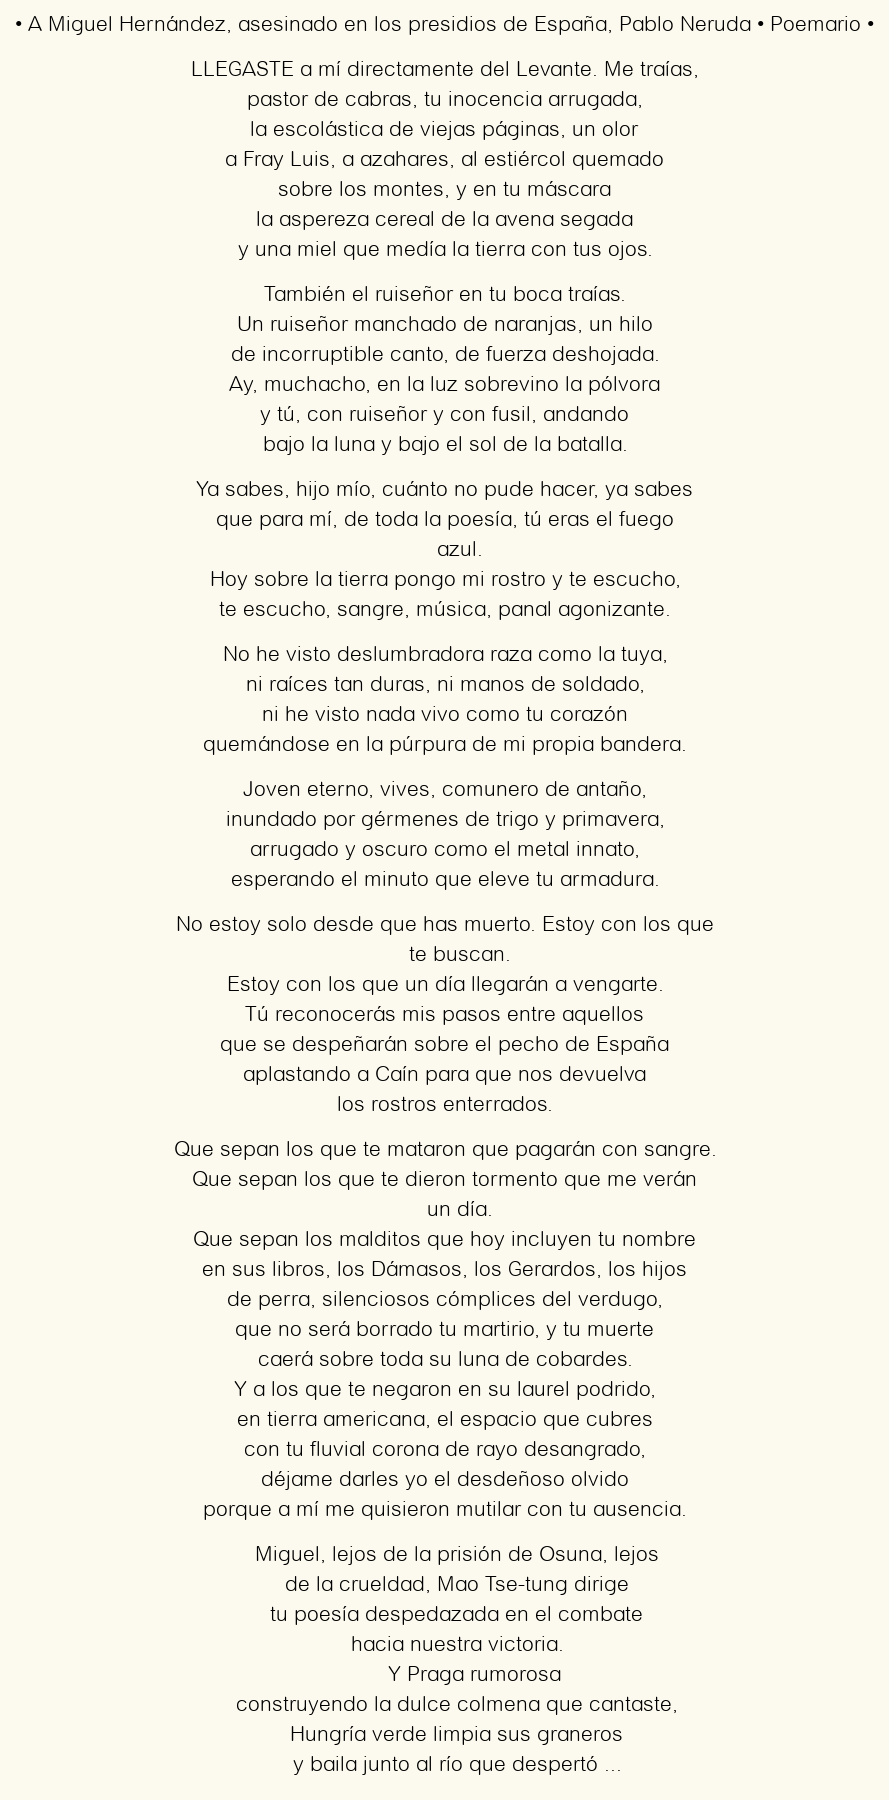 Imagen con el poema A Miguel Hernández, asesinado en los presidios de España, por Pablo Neruda